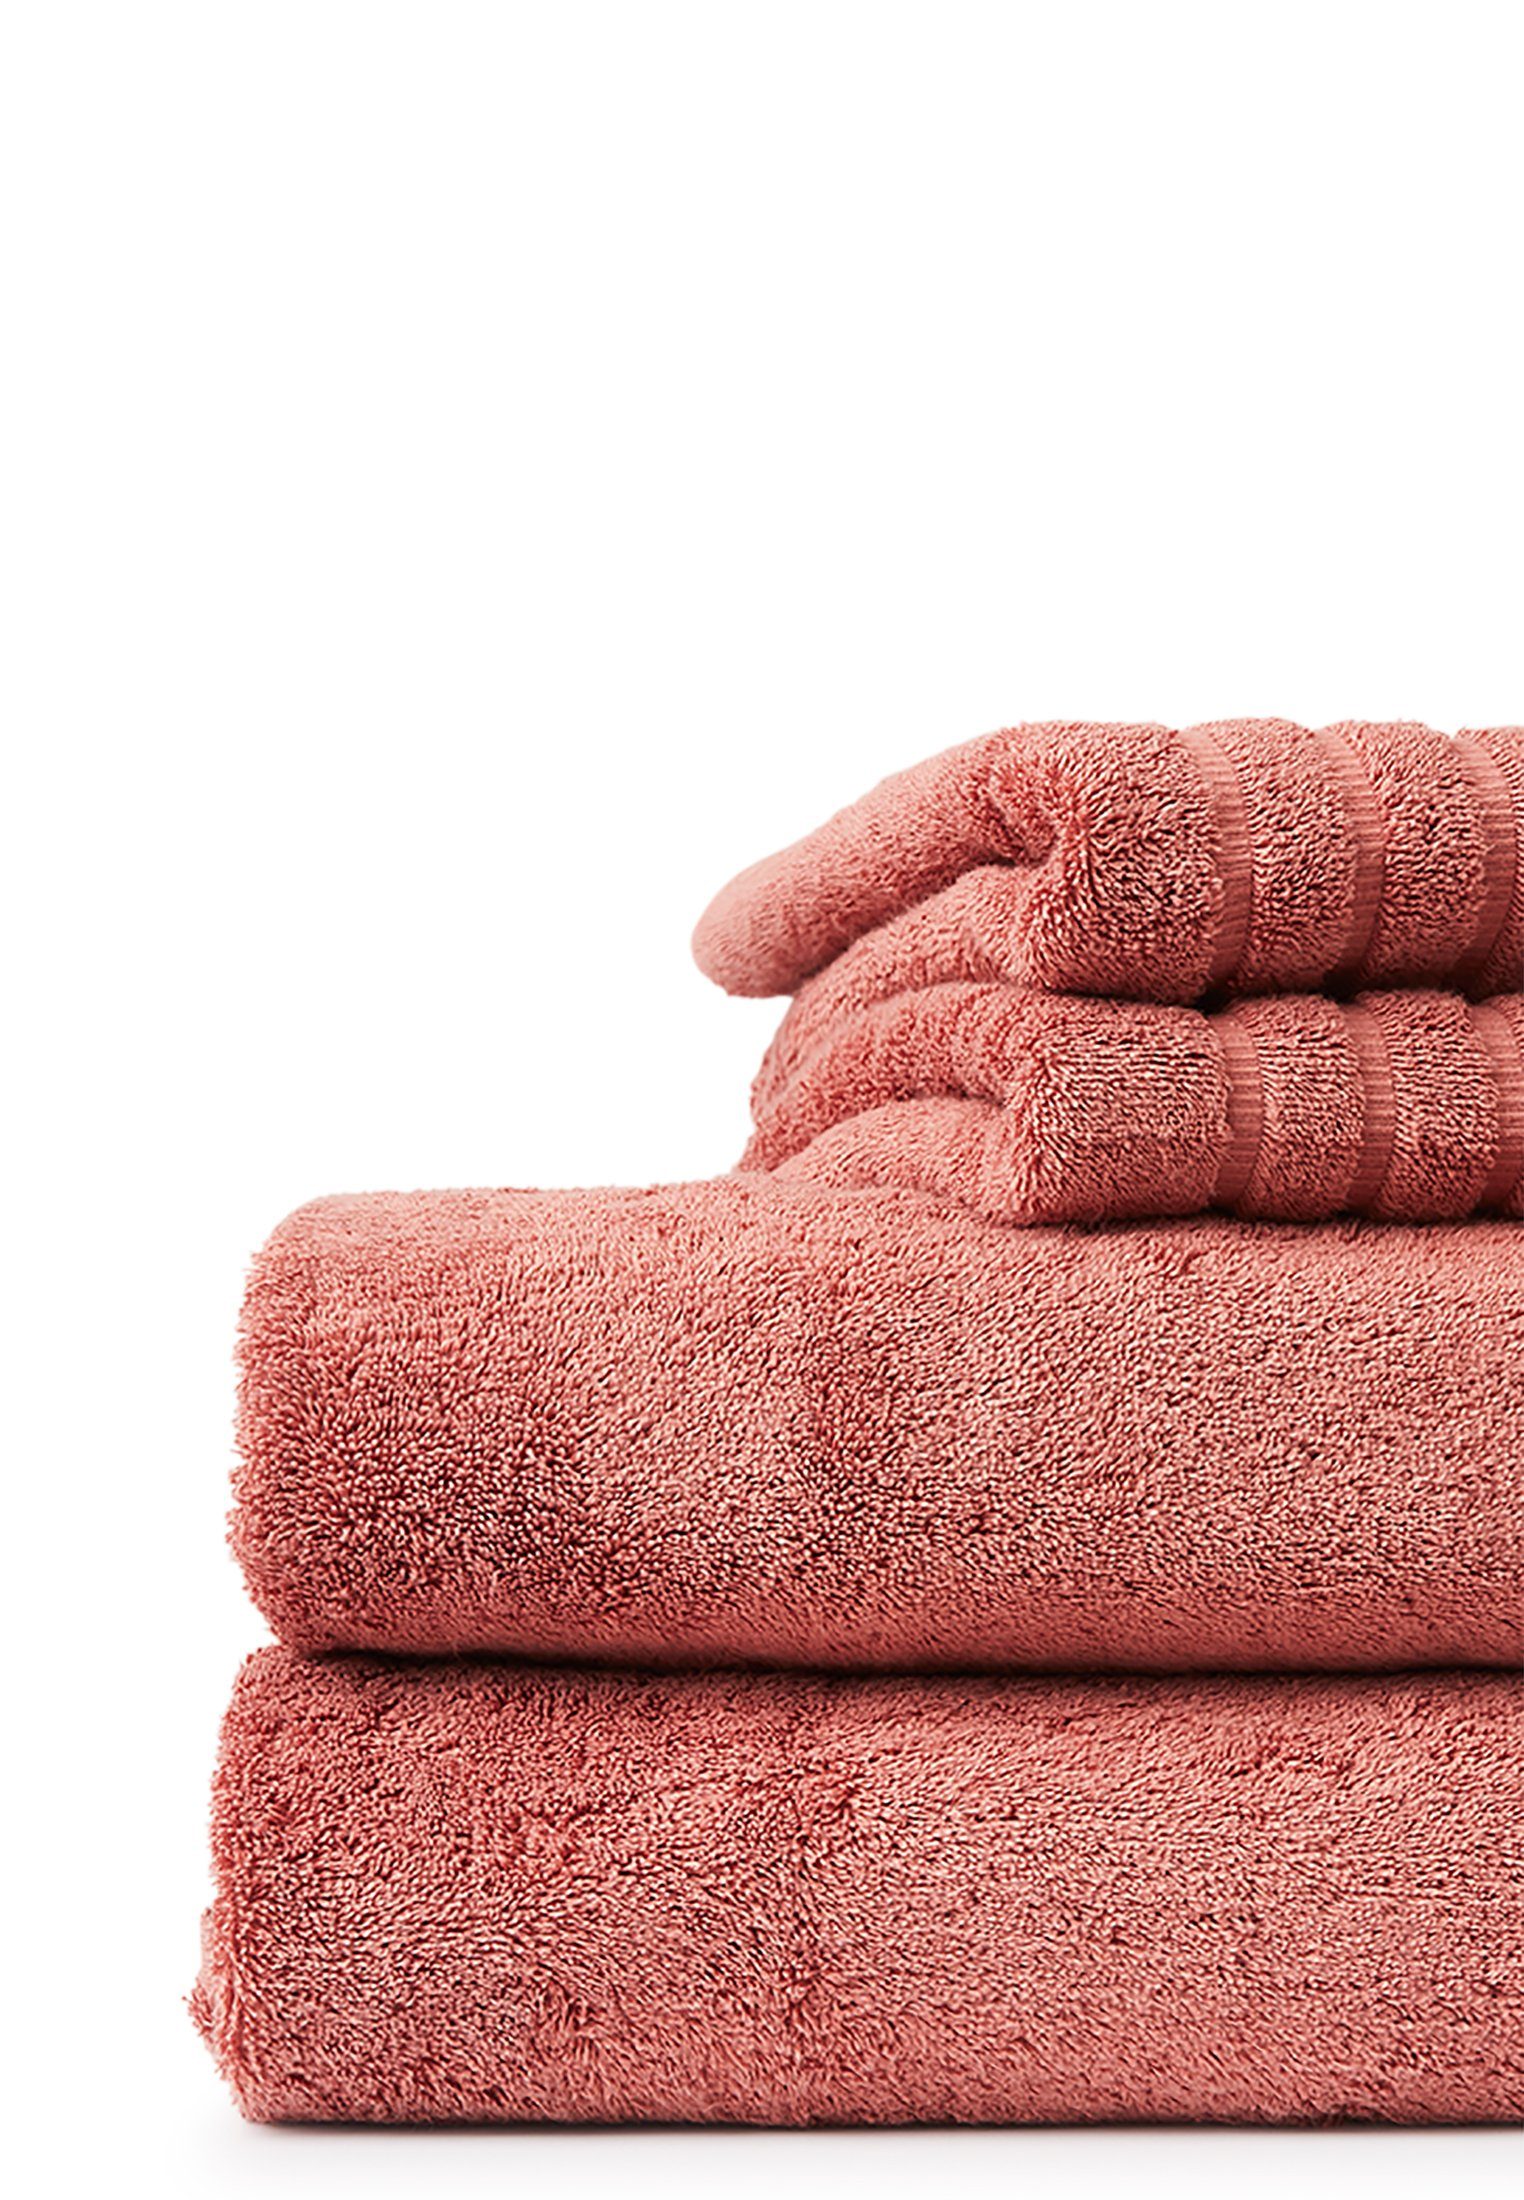 pink Towel Original Handtuch antique Lexington